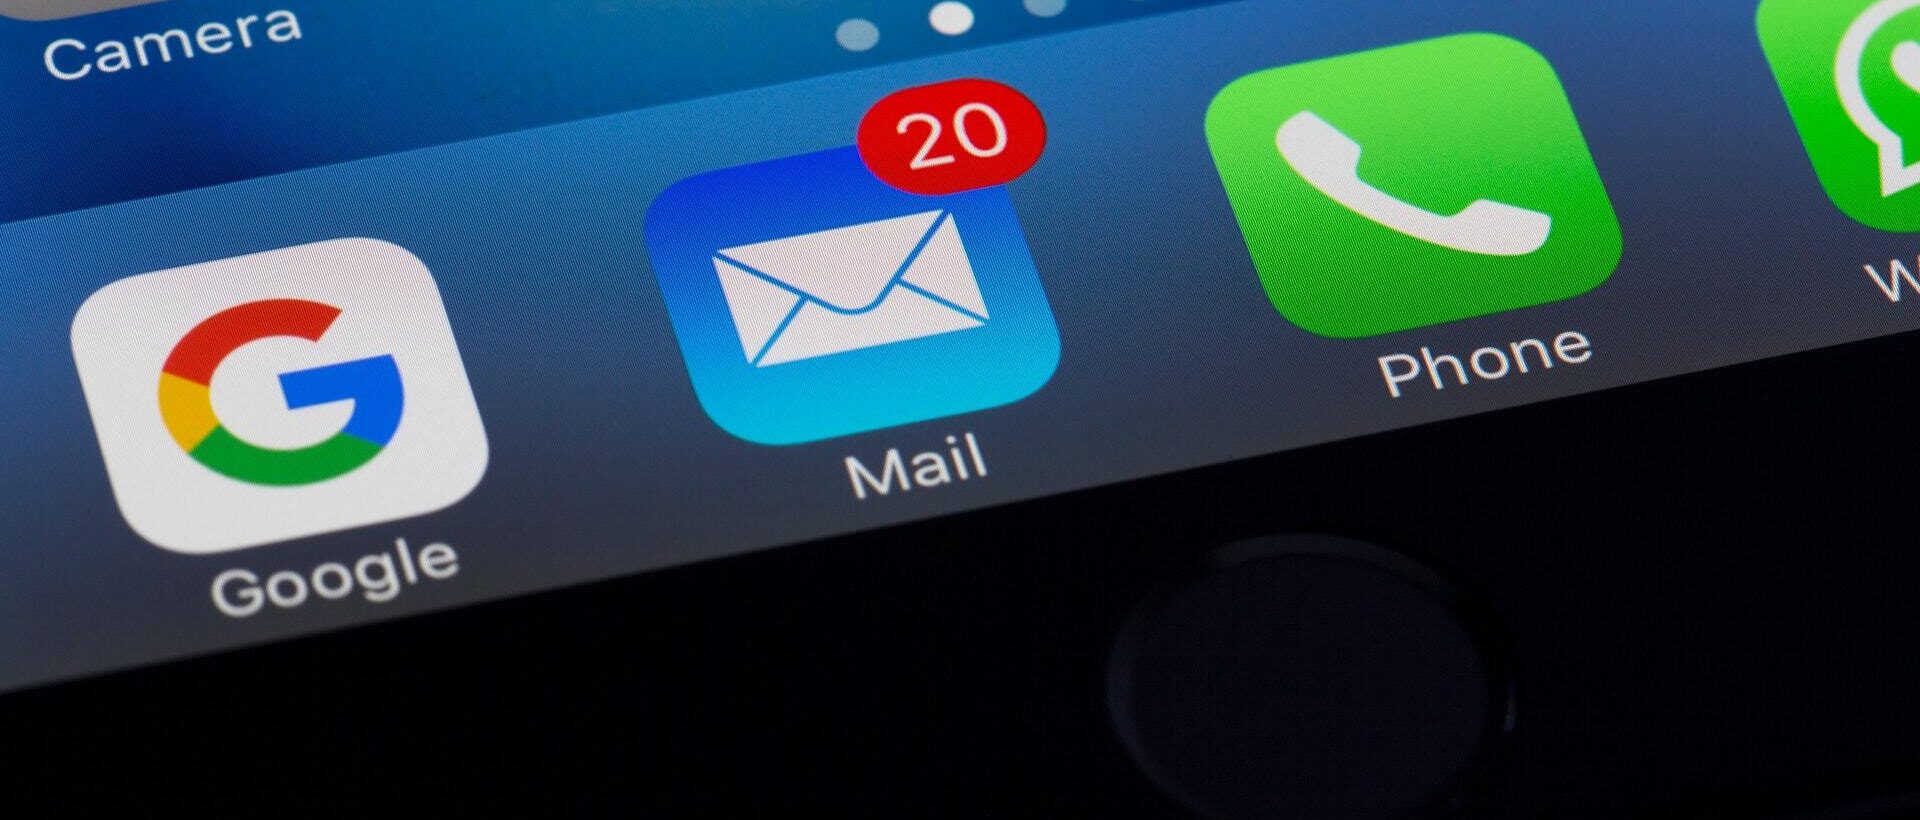 Auf einem iPhone werden eingegangene Mails angezeigt